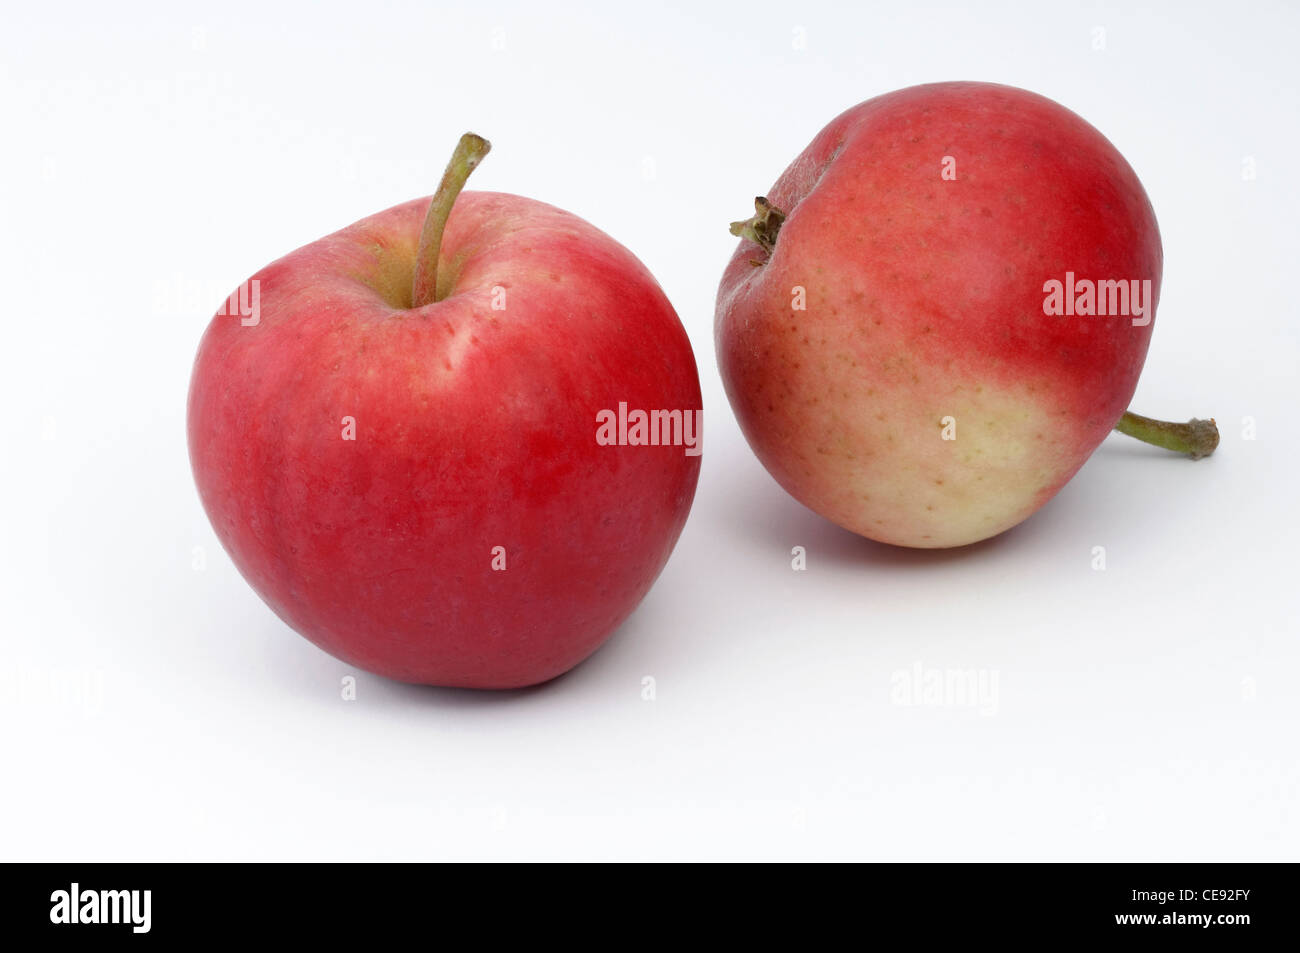 Manzano (Malus domestica interna), variedad: Peach Verano rojo manzana. Dos manzanas, studio picture contra un fondo blanco. Foto de stock